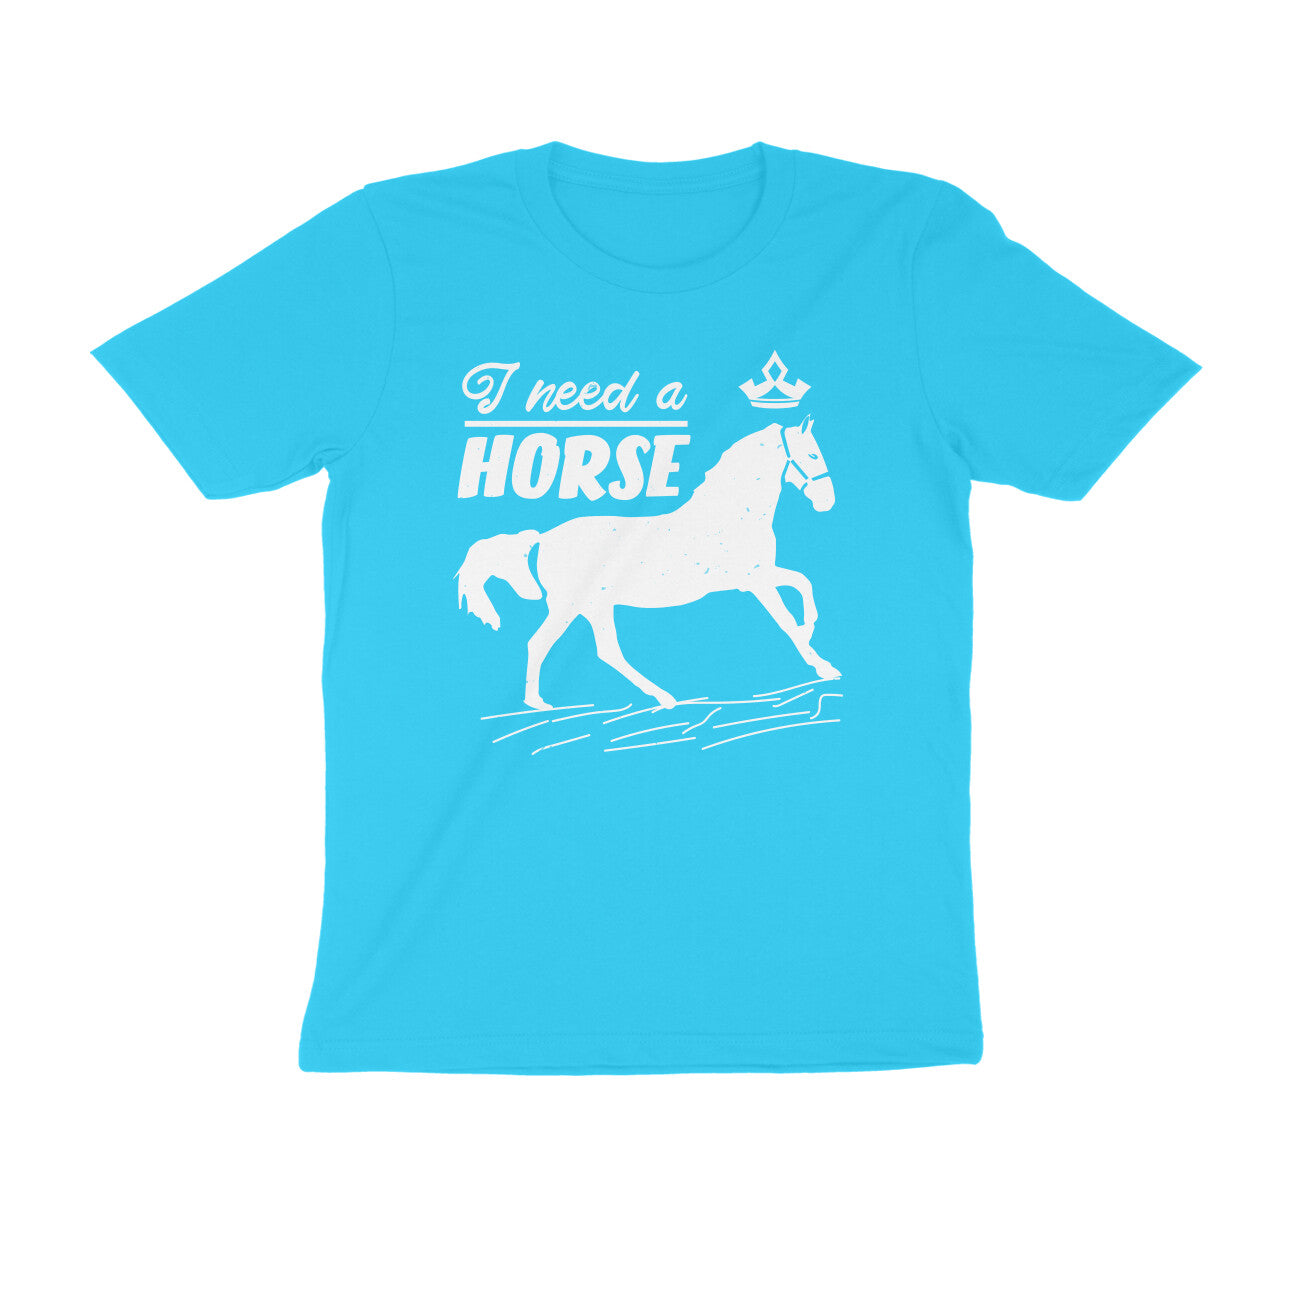 TNH - Men's Round Neck Tshirt - I Need a Horse